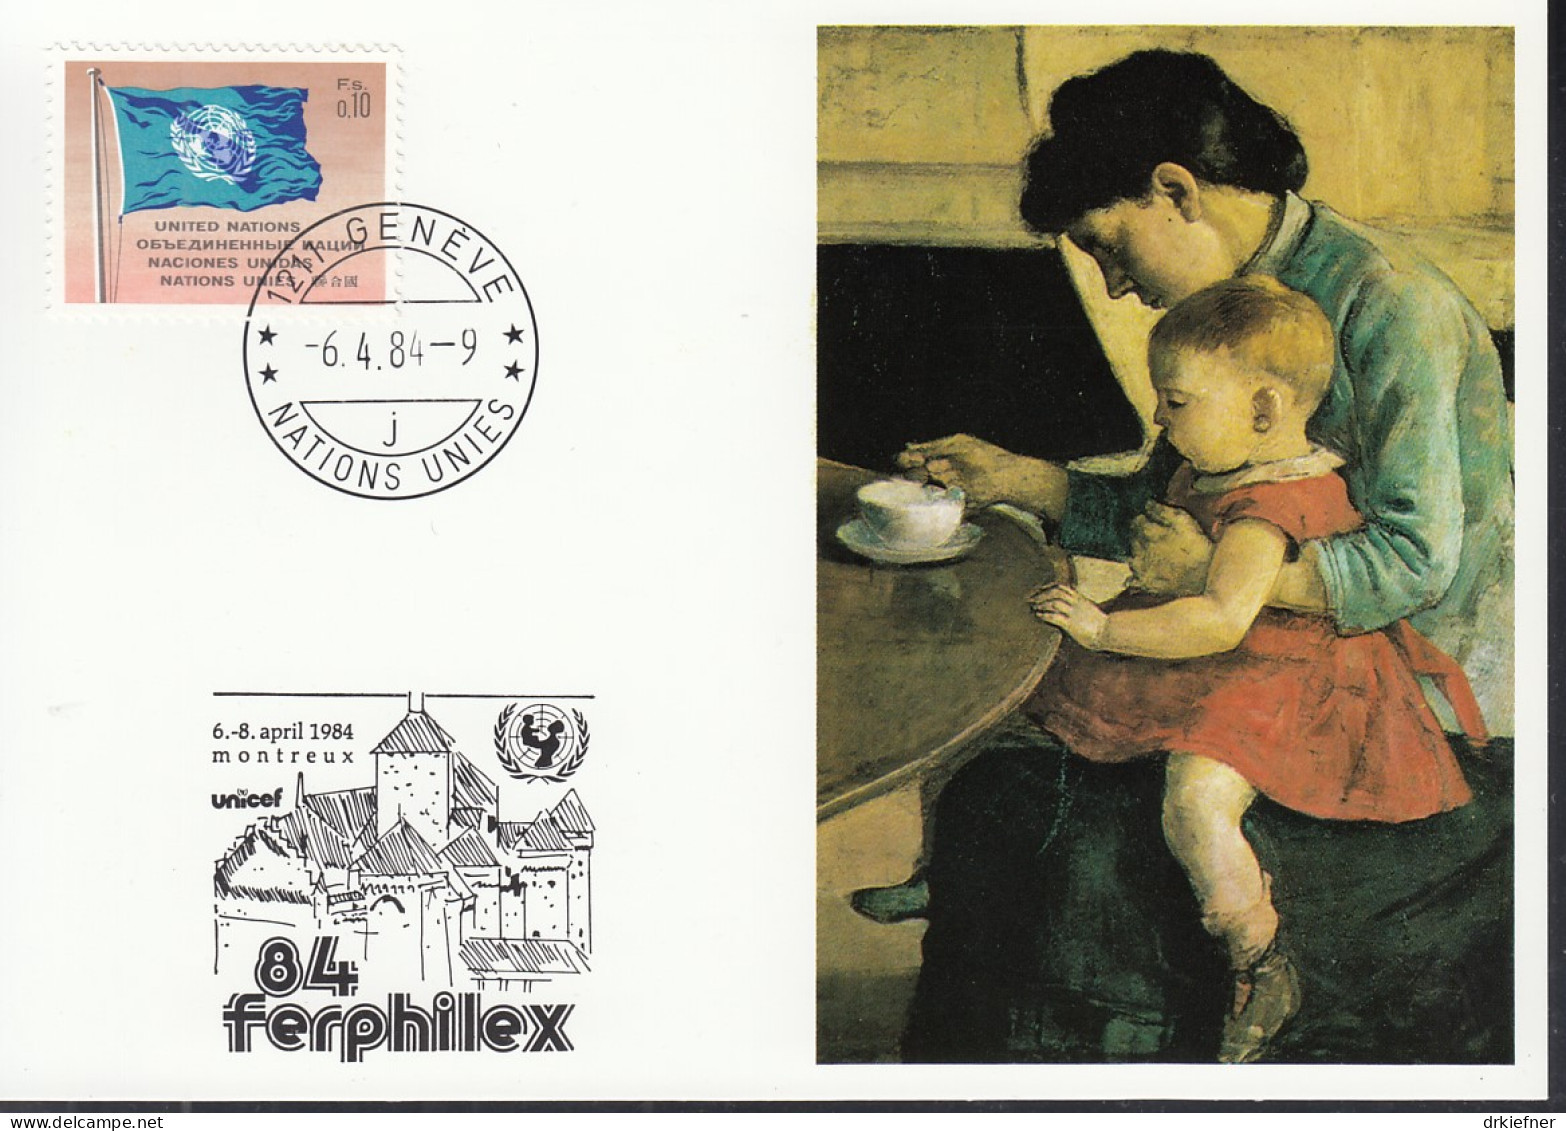 UNO NEW YORK  UNICEF-Kunstkarte, Mutter Und Kind Von Ferdinand Hodler, Aussellungskarte FERPHILEX Montreux, St: 6.4.1984 - Lettres & Documents